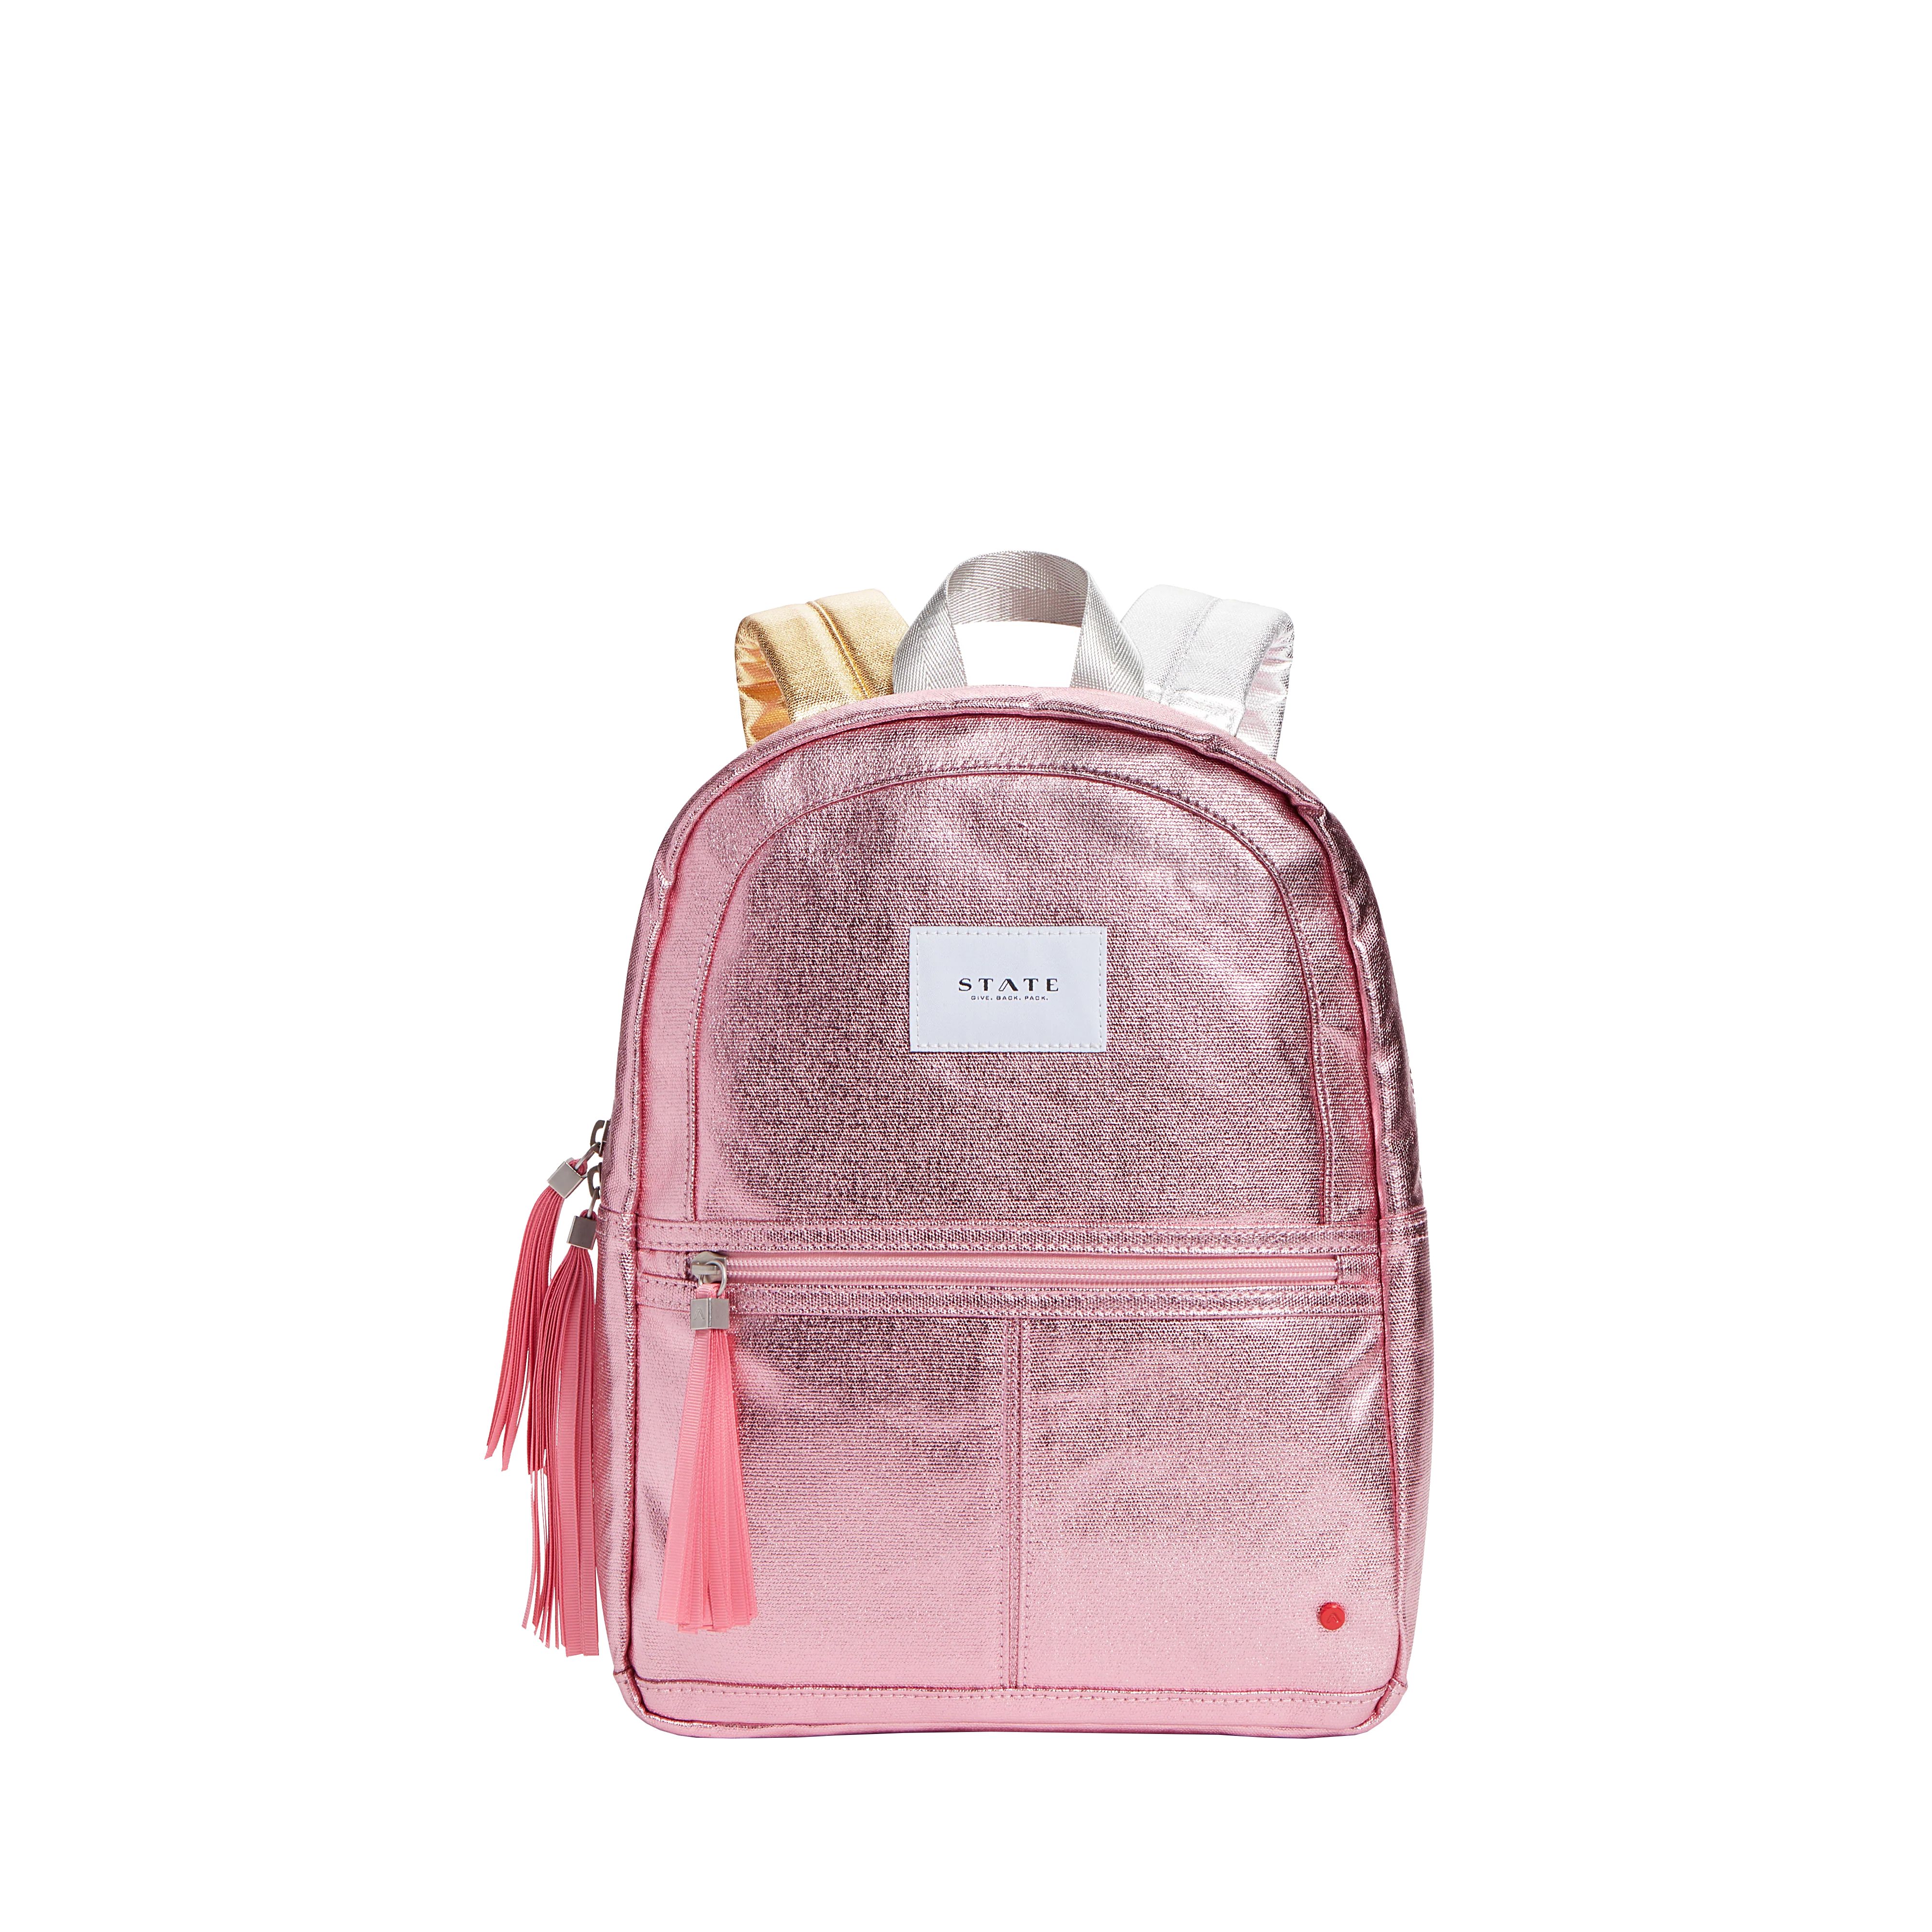 Kane Kids Mini Travel Backpack Metallic Pink/Silver | STATE Bags